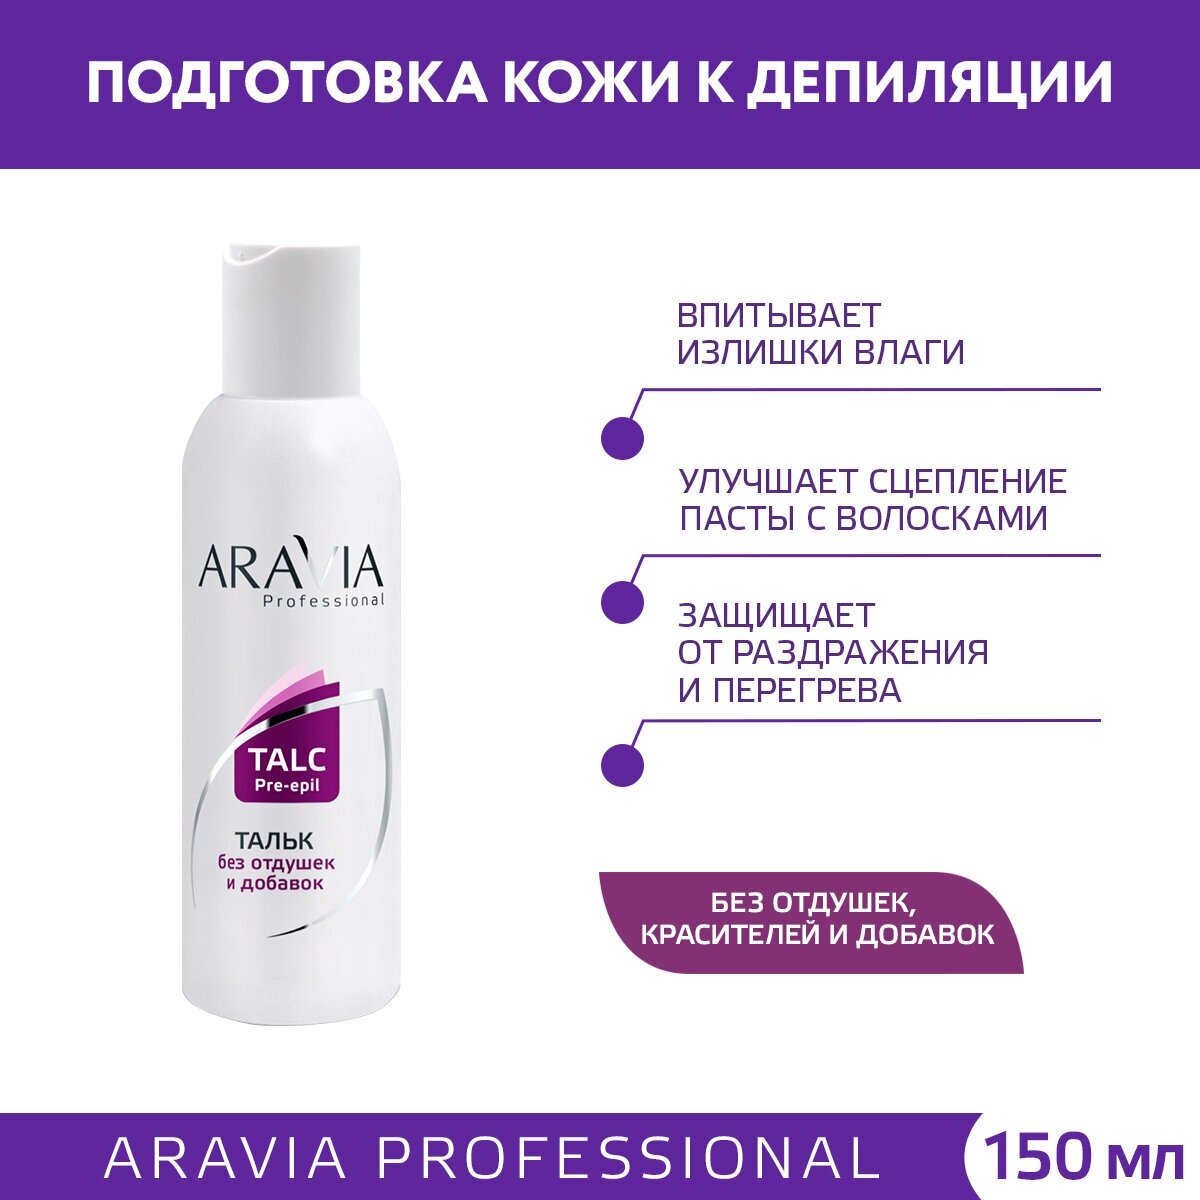 Aravia professional Тальк без отдушек и химических добавок 180 гр (Aravia professional, ) - фото №2